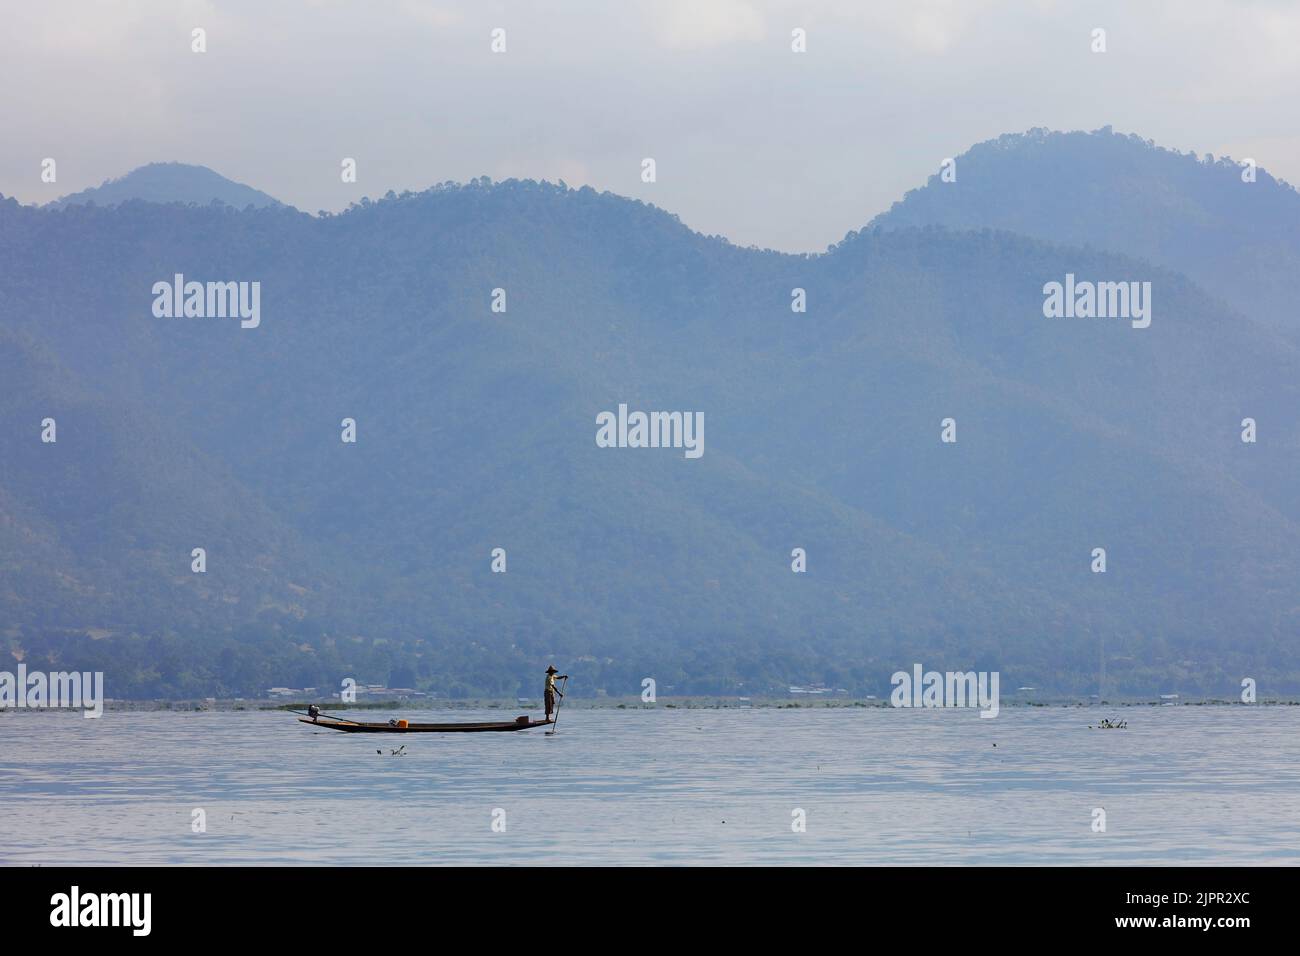 Un pêcheur traditionnel intha birman à une jambe sur son bateau en bois avec les montagnes en arrière-plan, lac Inle, Myanmar. Banque D'Images